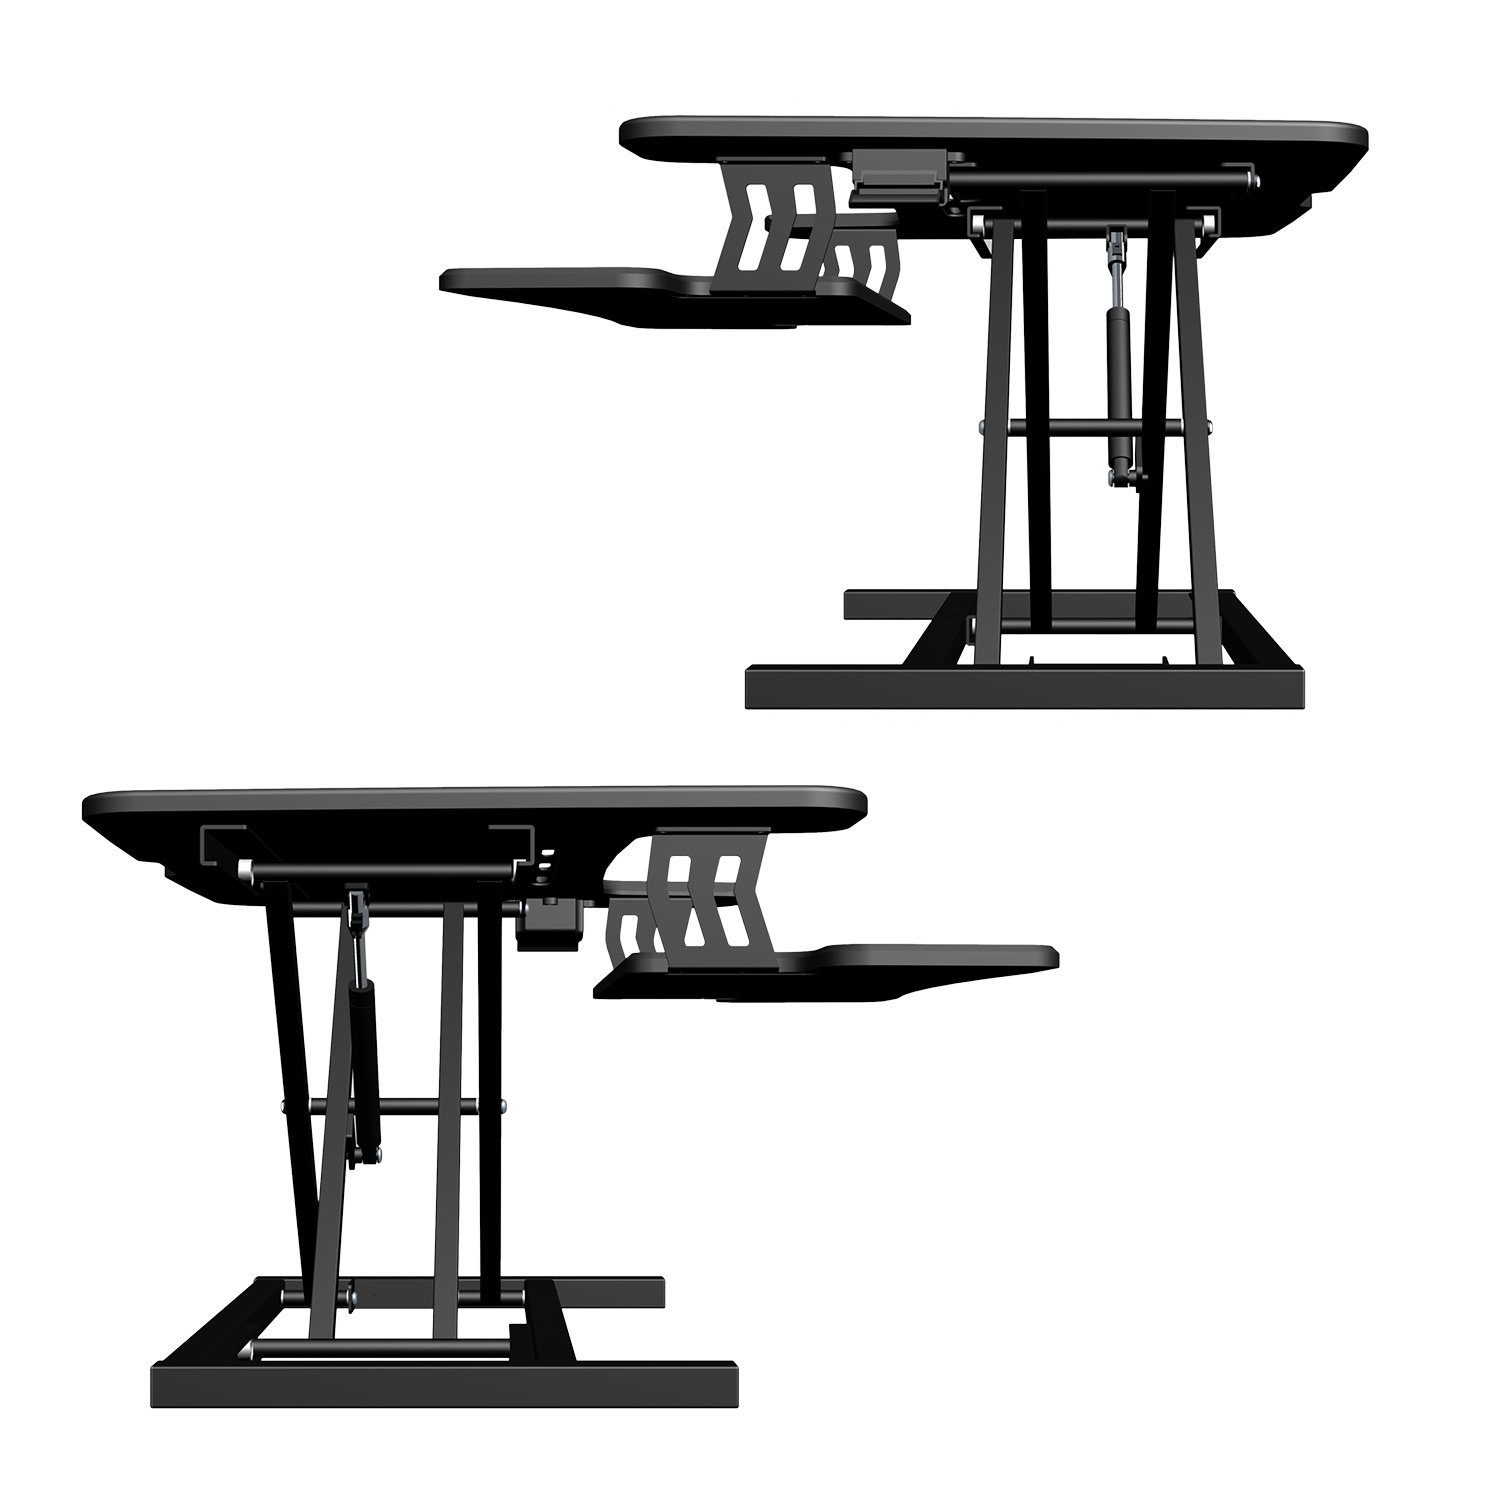 exeta Schreibtischaufsatz Tischaufsatz ergoX-S Stehpult Höhenverstellbarer manuell Homeoffice